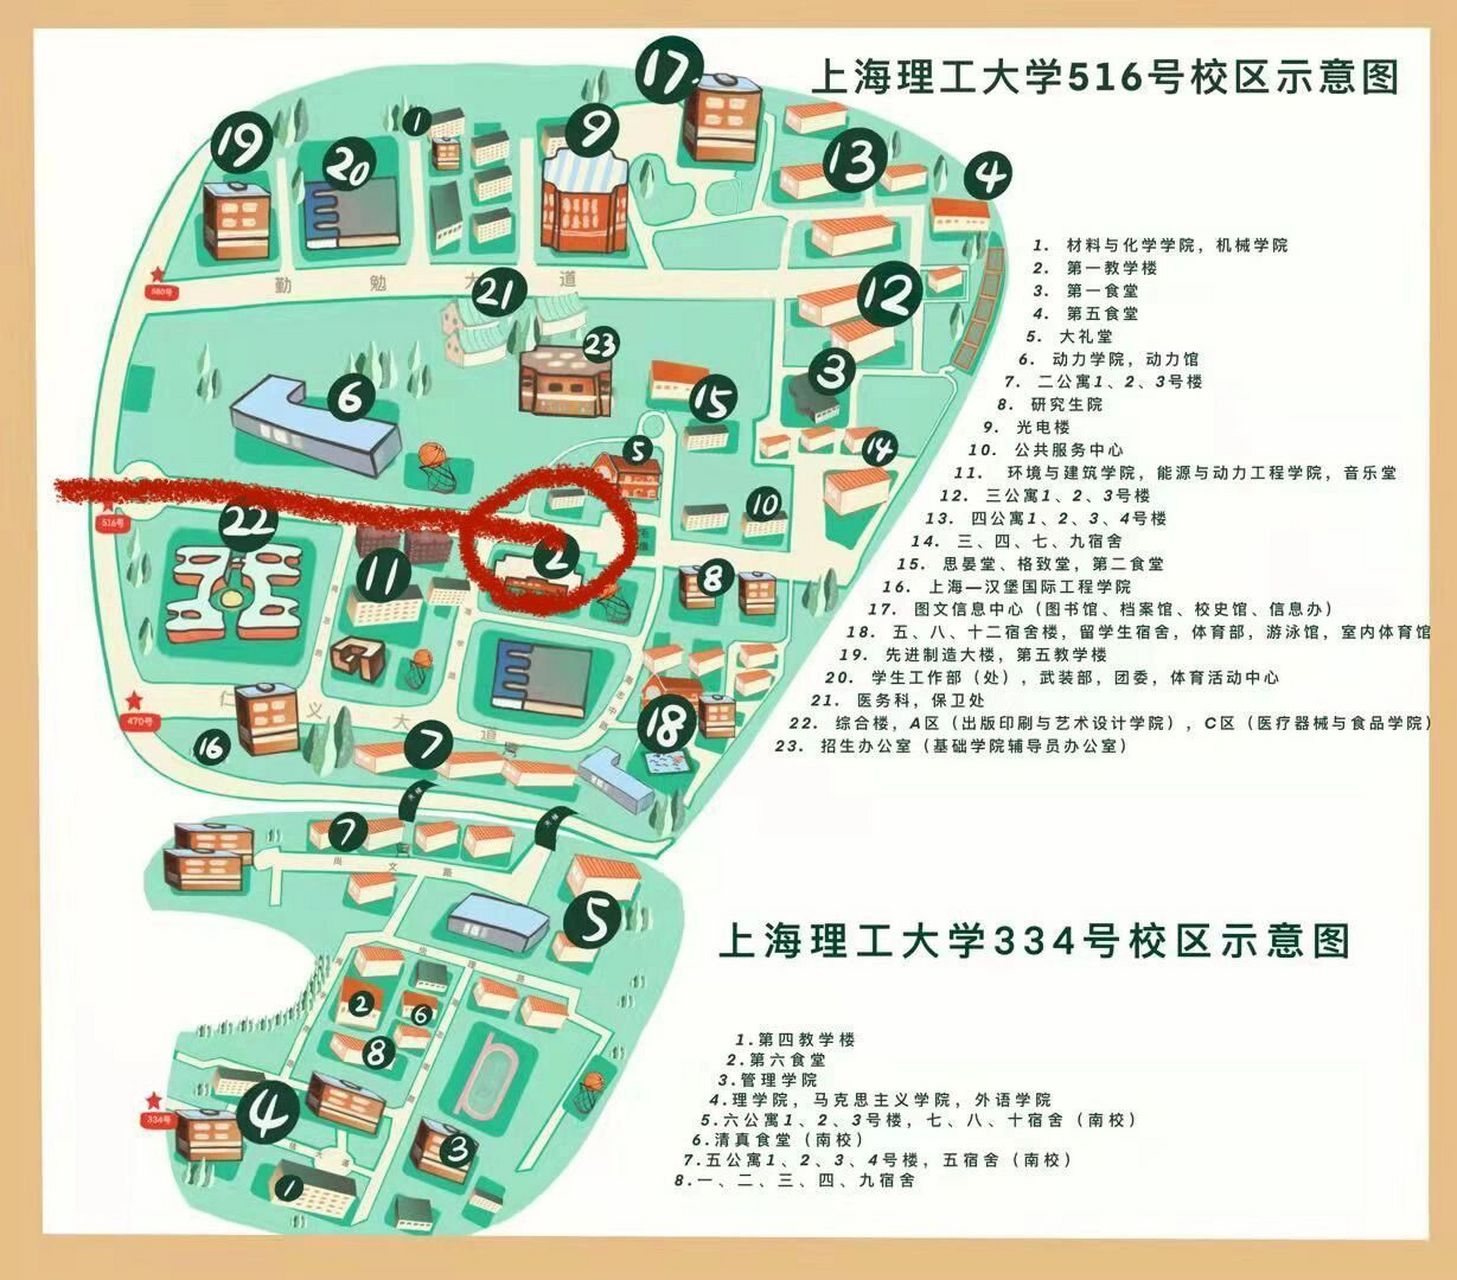 上海理工大学 马上就要开学啦,大家应该也从辅导员那里知道自己宿舍了